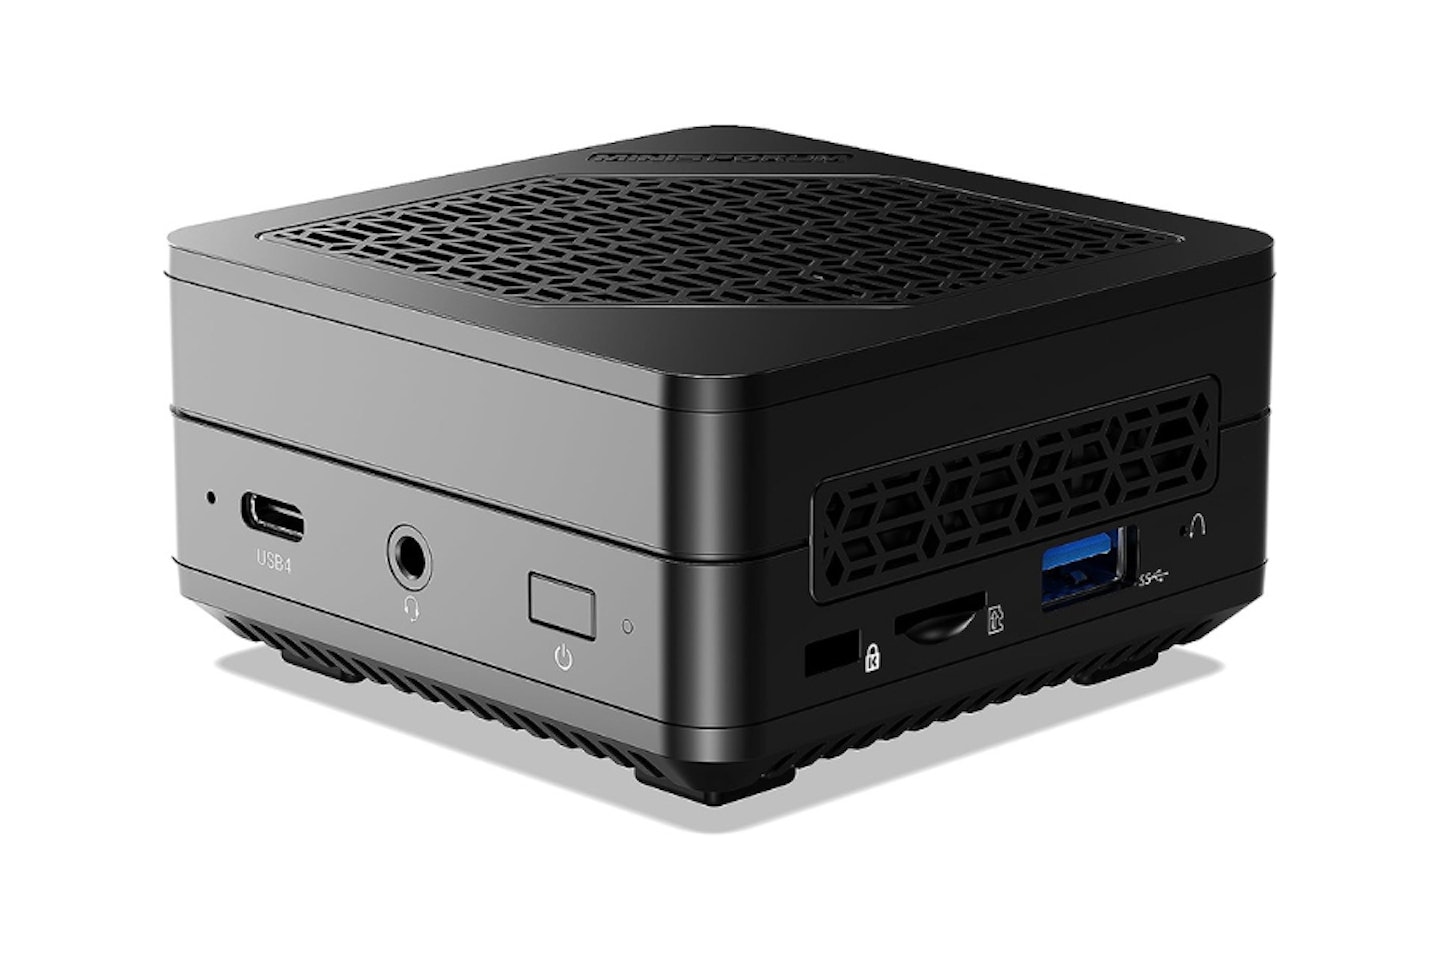 NiPoGi Mini Desktop PC W-11 Pro Review